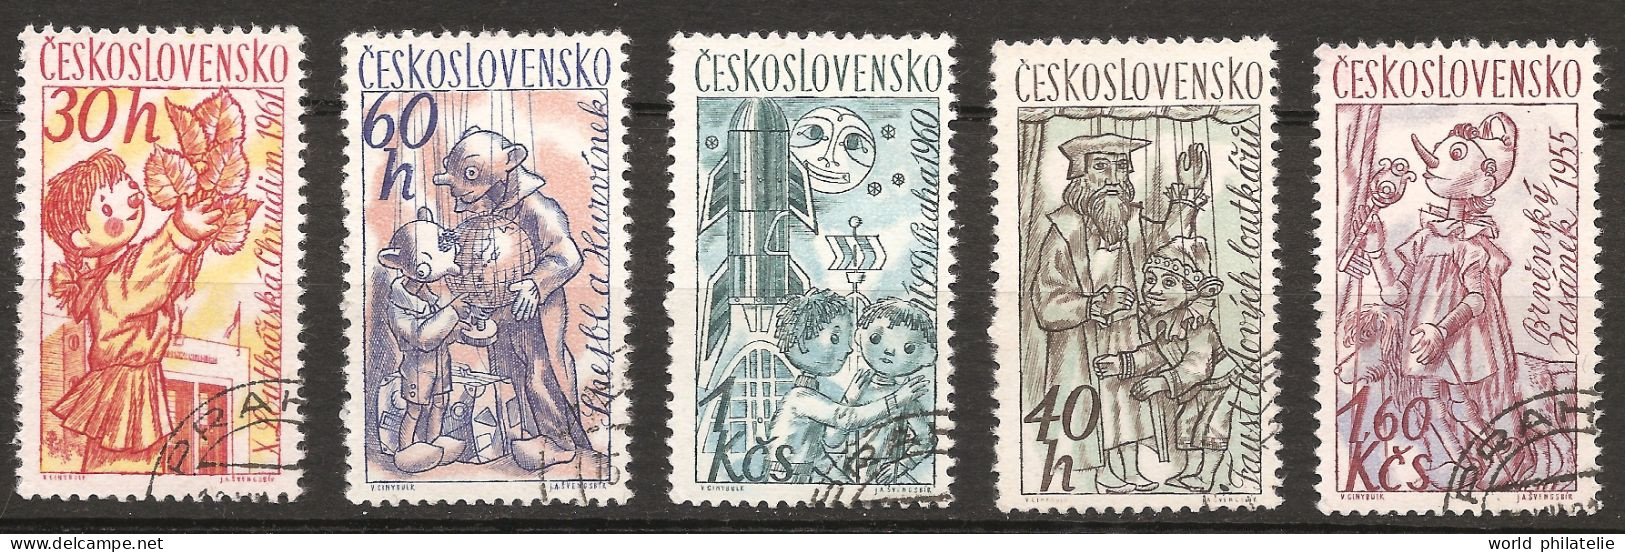 Tchécoslovaquie 1961 N° 1156 / 60 O Marionettes, Théâtre, Guignol, Pinocchio, Faust Et Gaspard, Lune, Fusée Jasanek Brno - Oblitérés